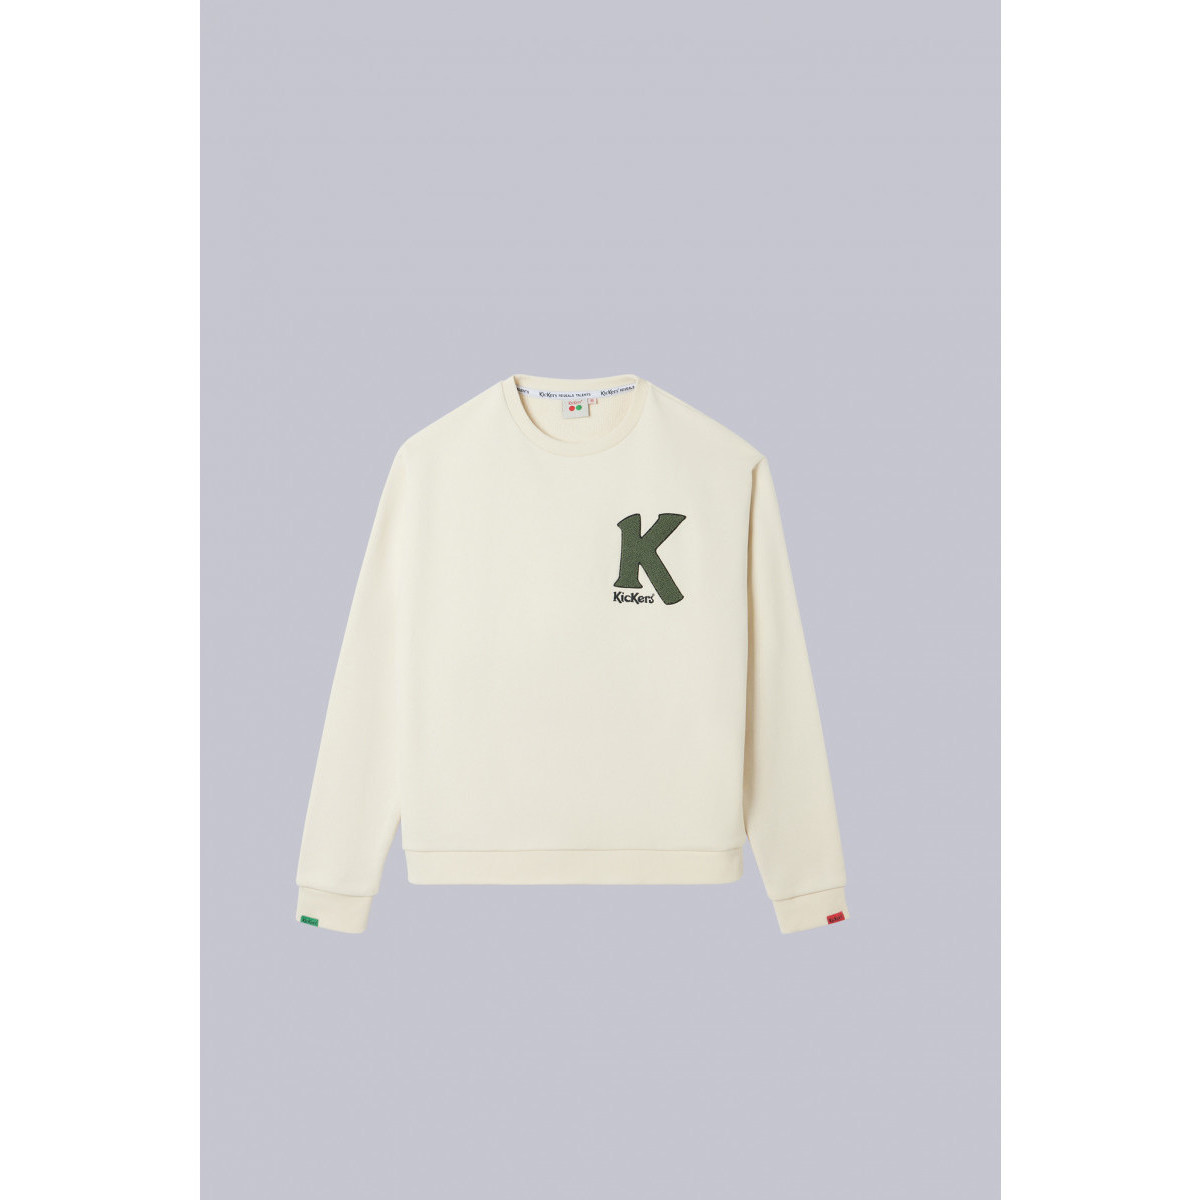 Vêtements Sweats Kickers Big K Sweater Beige